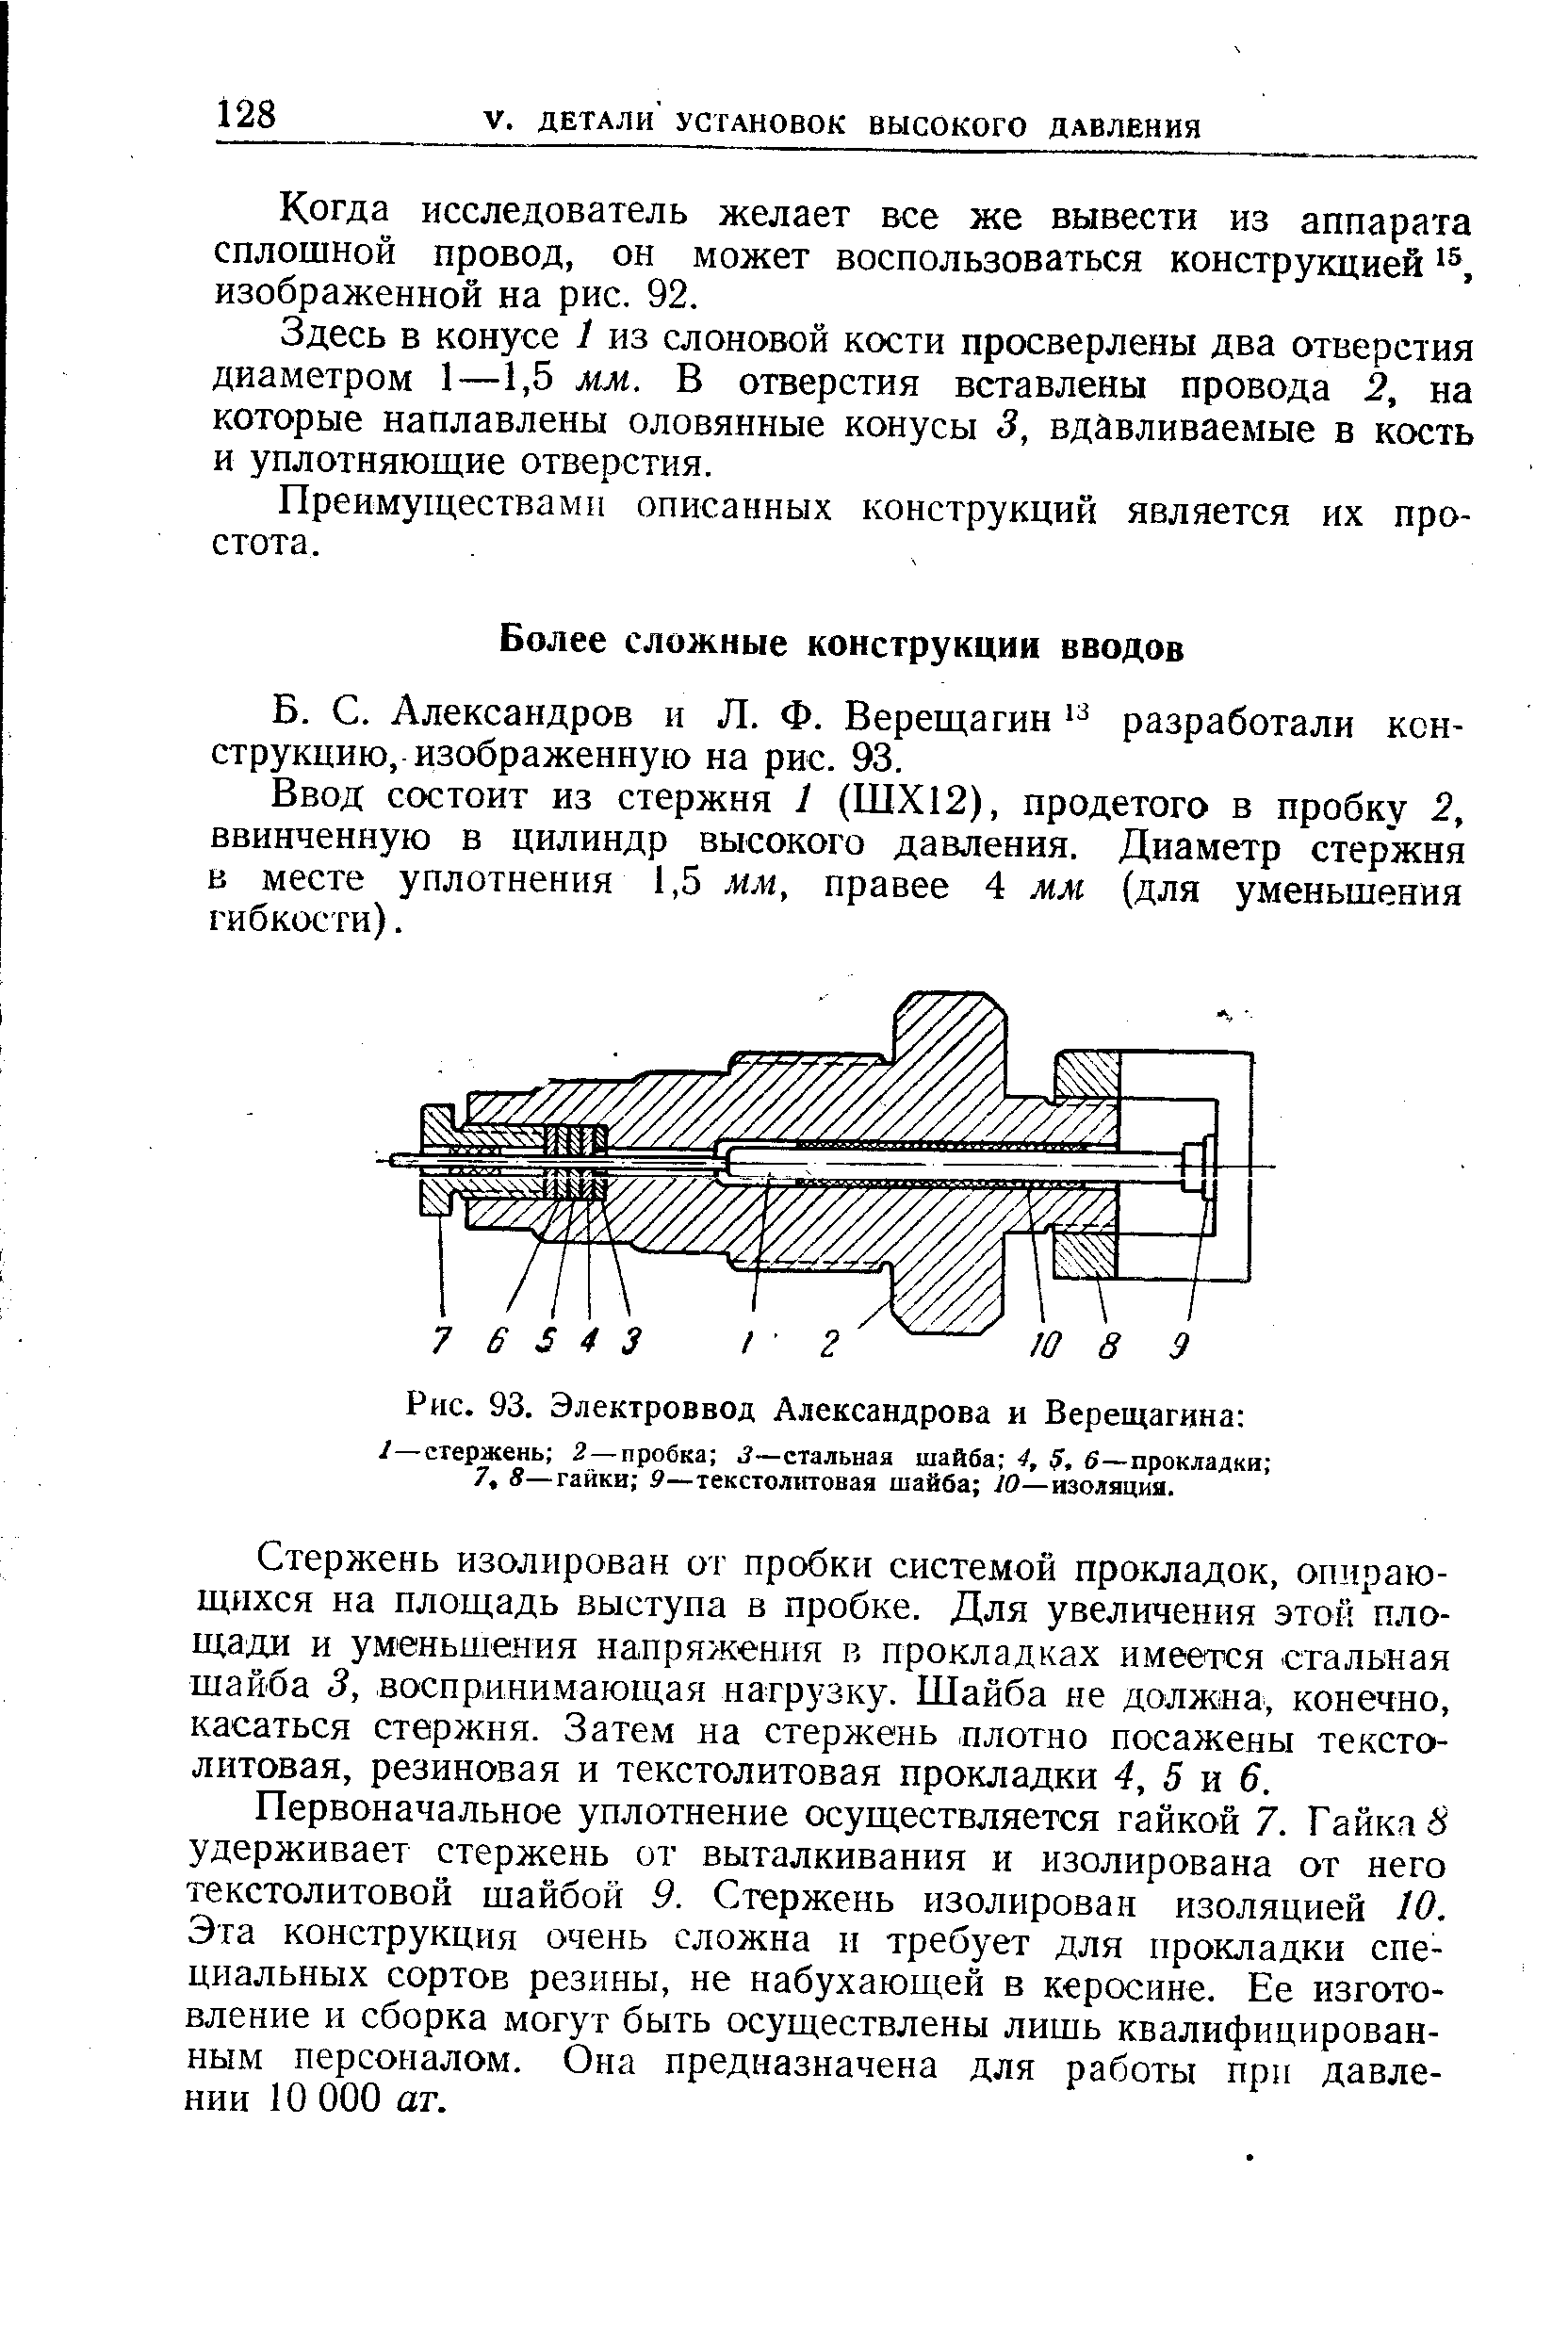 Александров и Л. Ф. Верещагин разработали конструкцию, изображенную на рис. 93.